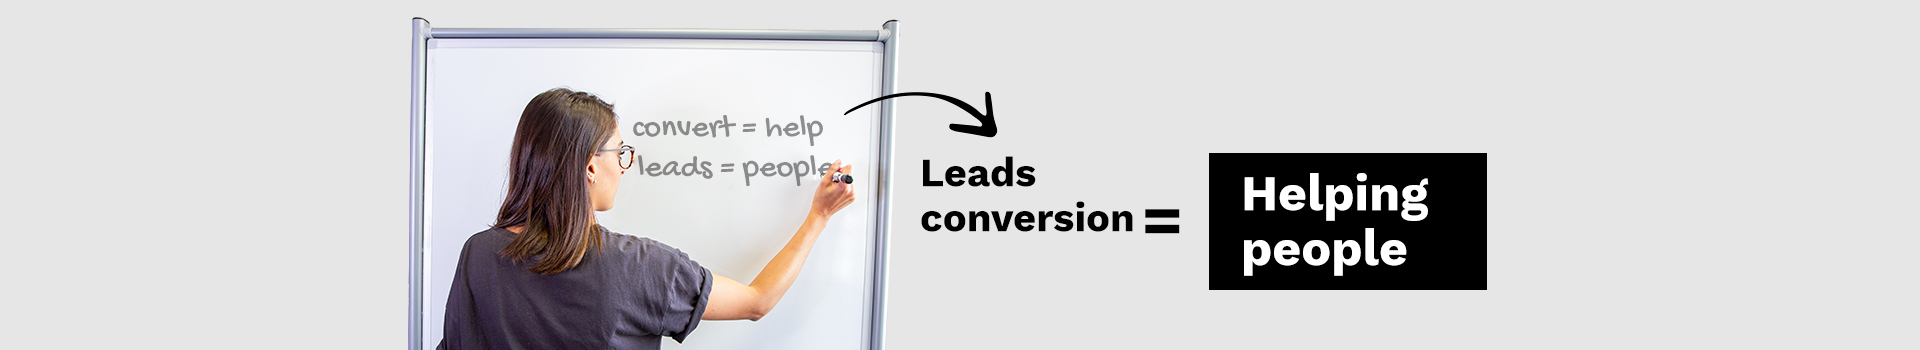 conversion-de-leads-banner-english